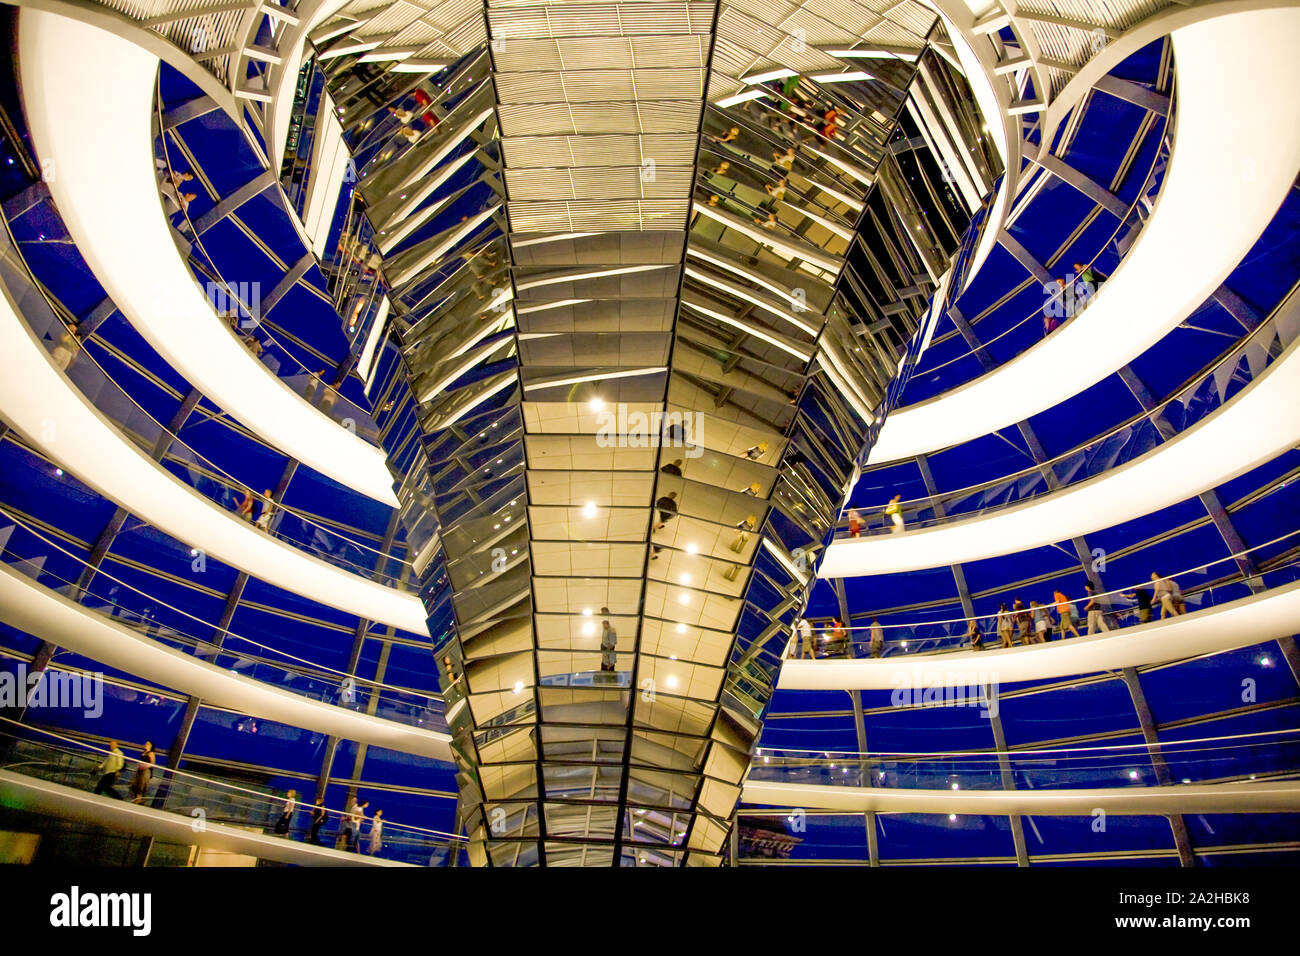 La cupola di vetro in cima al Reichstag di notte dove i visitatori possono osservare il Bundestag - la Camera bassa del tedesco federale europeo. Berlino Germania Foto Stock